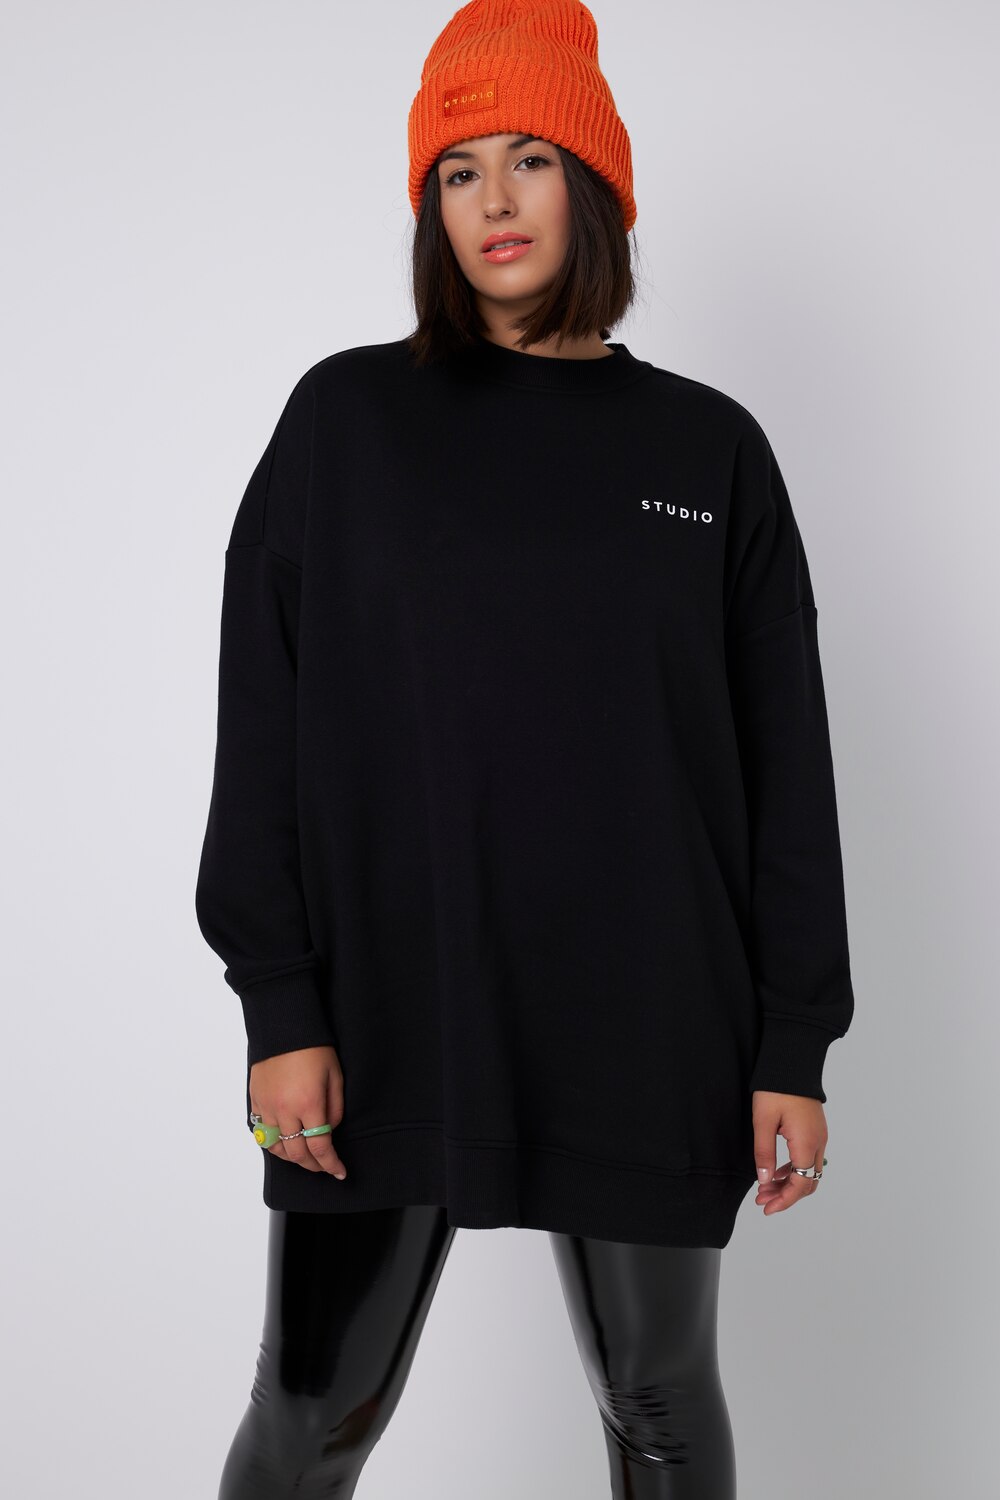 Grote Maten sweatshirt, Dames, zwart, Maat: 50/52, Katoen/Polyester, Studio Untold